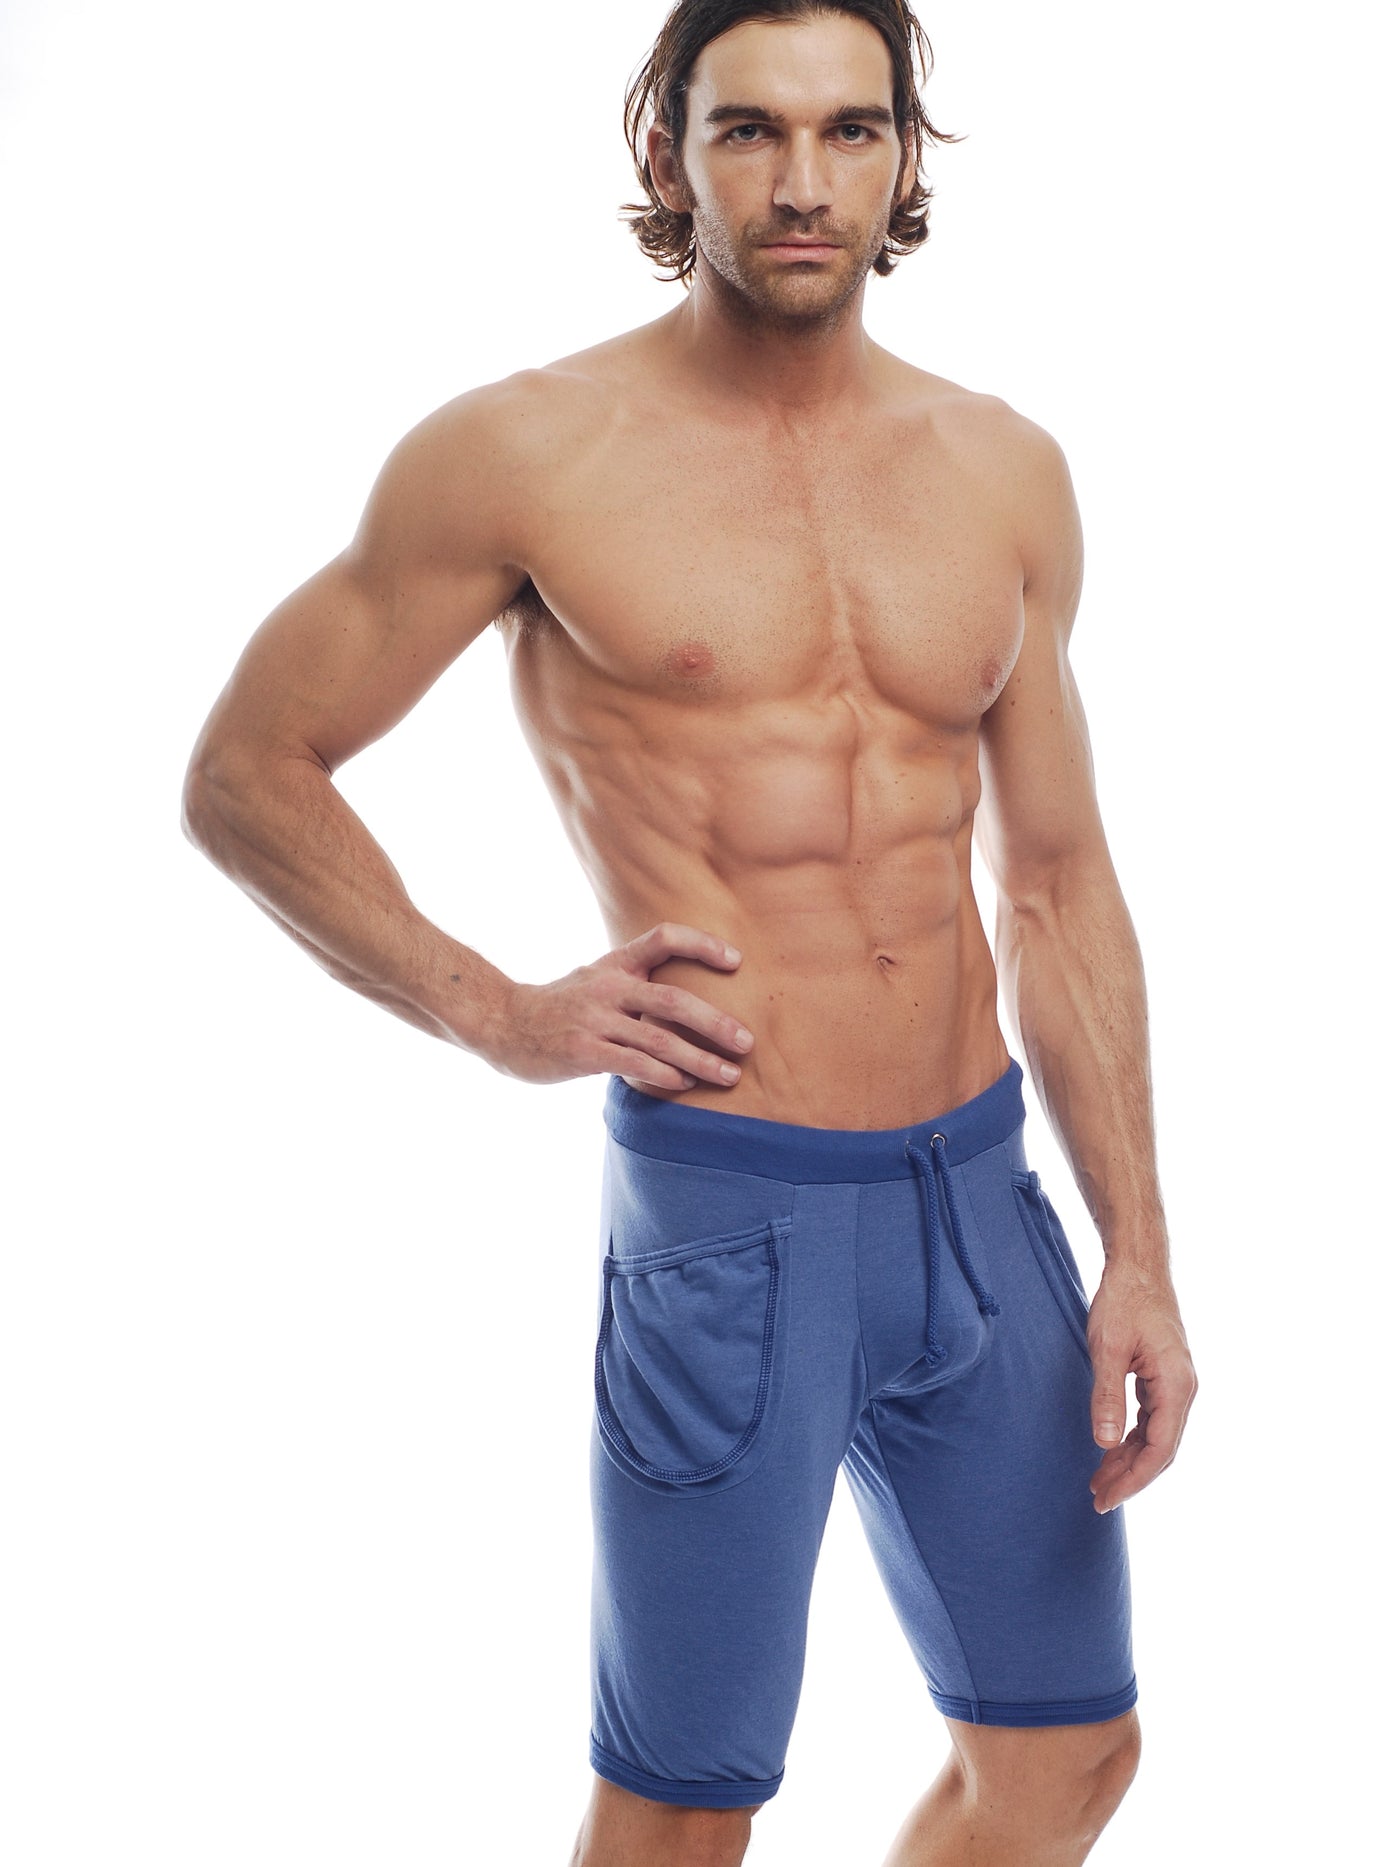 GO SOFTWEAR Vintage Wash Yoga Shorts For Men Cadet Blue - Activemen Clothing